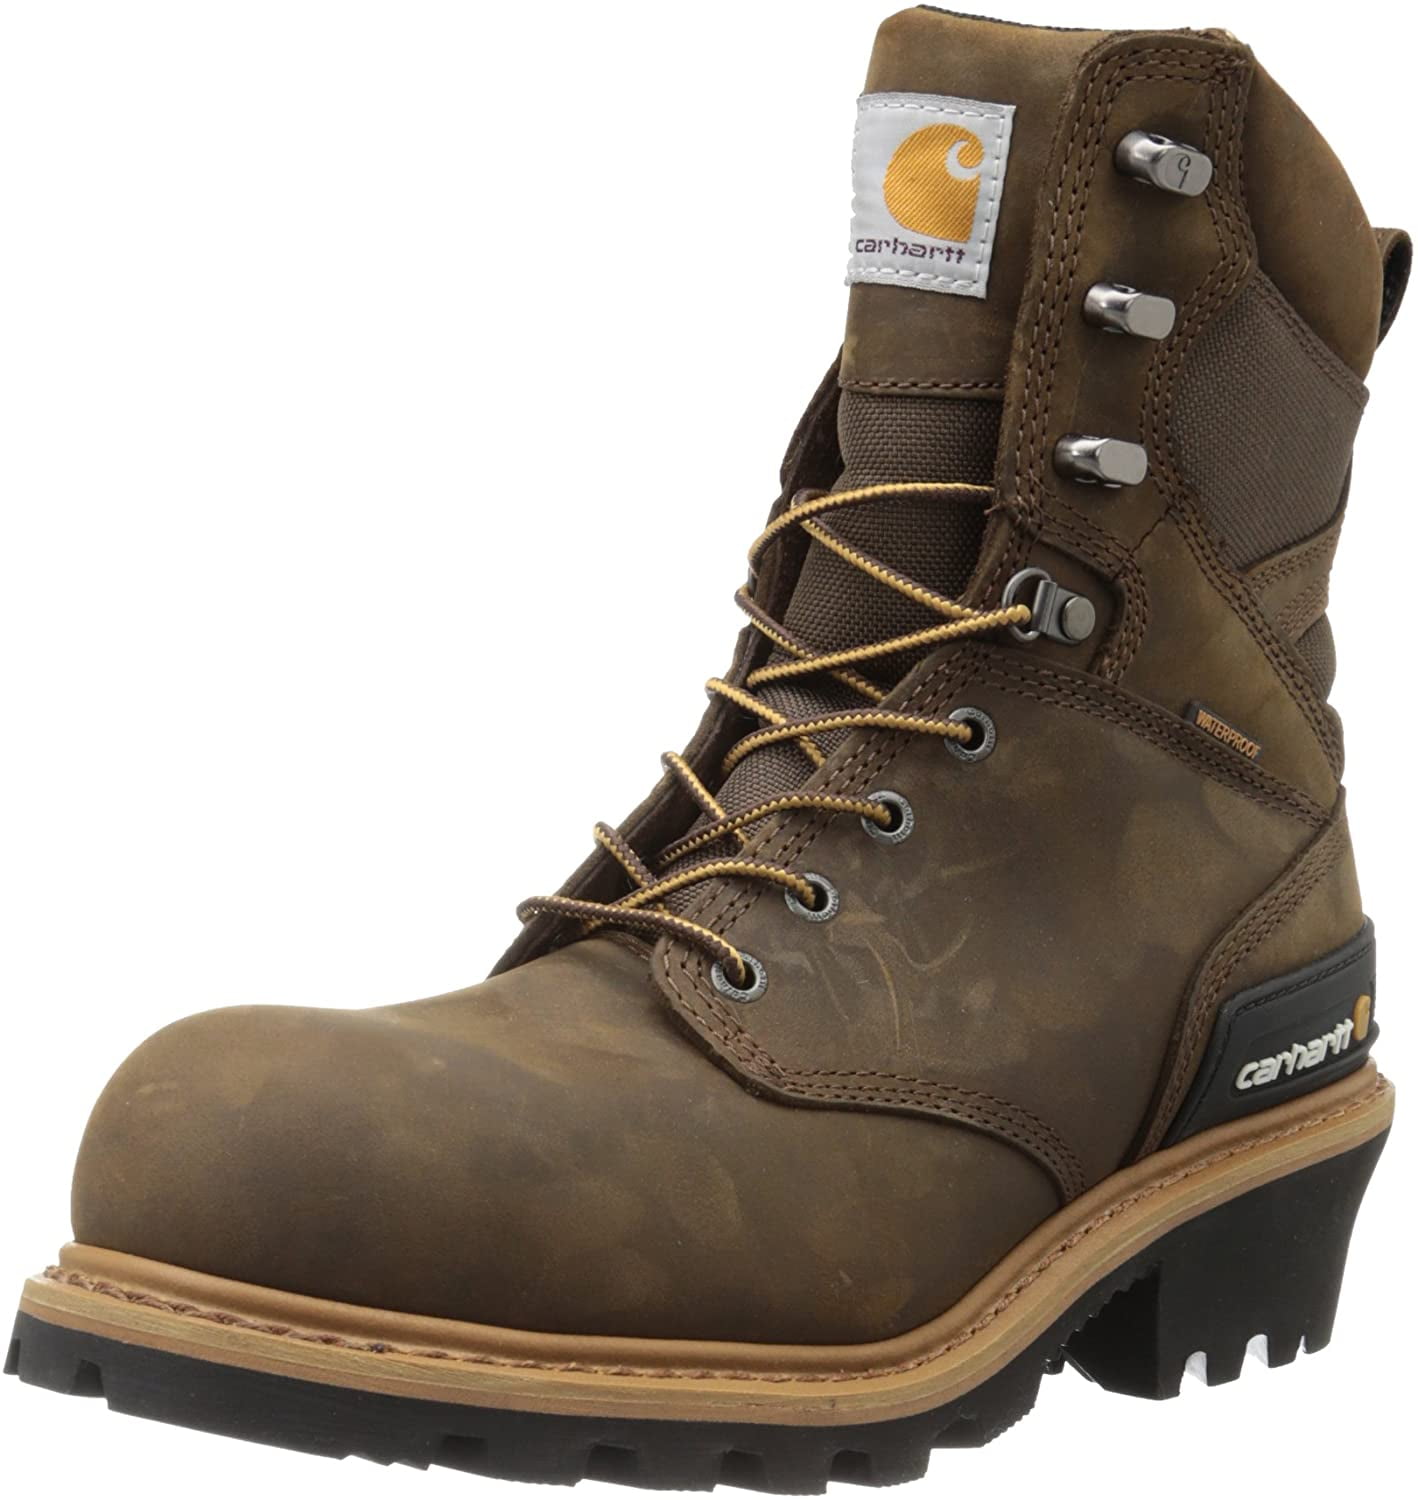 Buy > carhartt boots for men > in stock